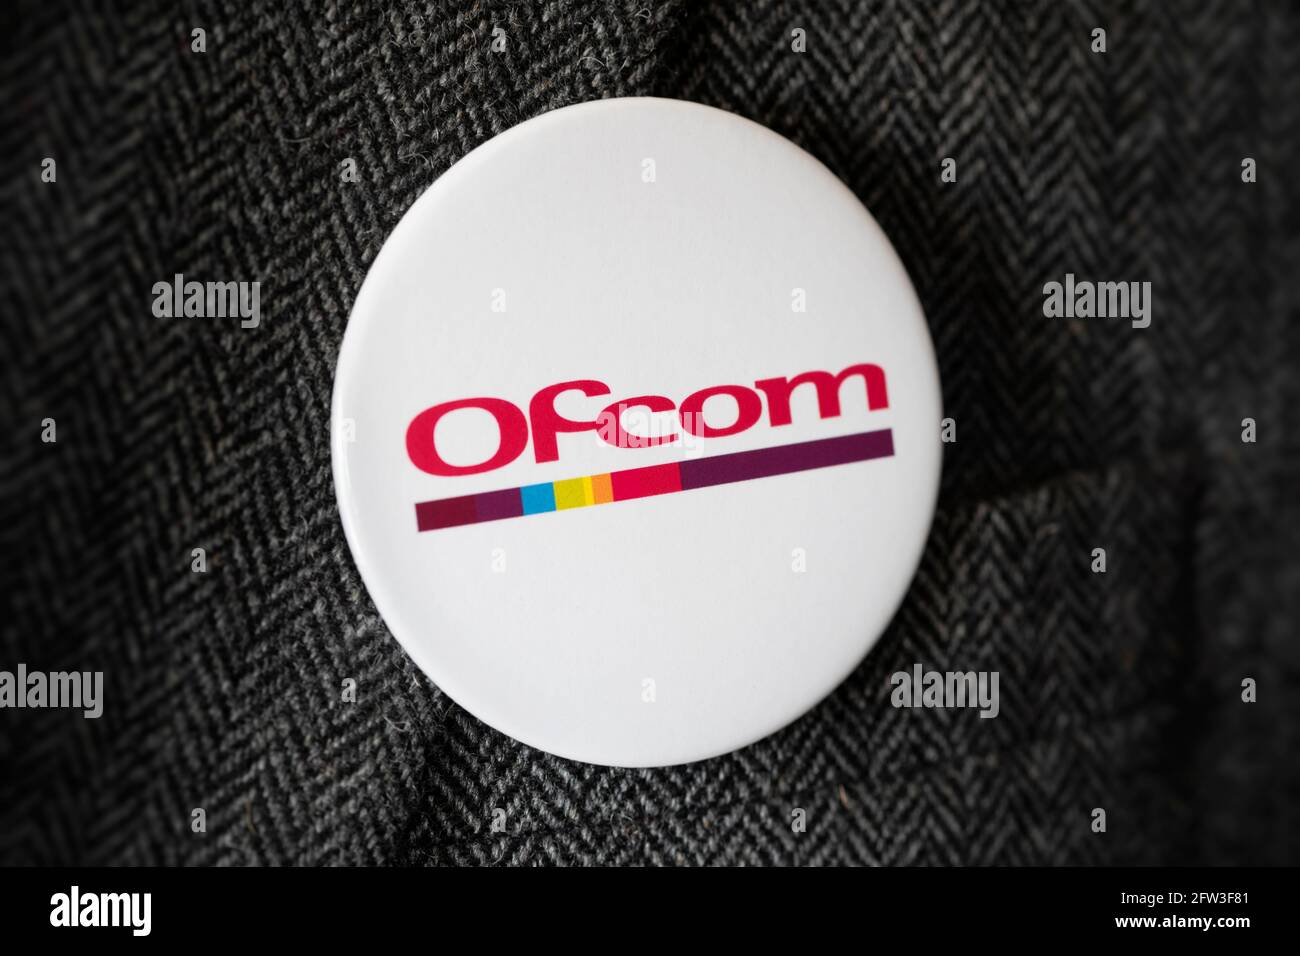 Un distintivo de botón con el logotipo del regulador de comunicaciones Ofcom sujeto a una funda de traje. Foto de stock